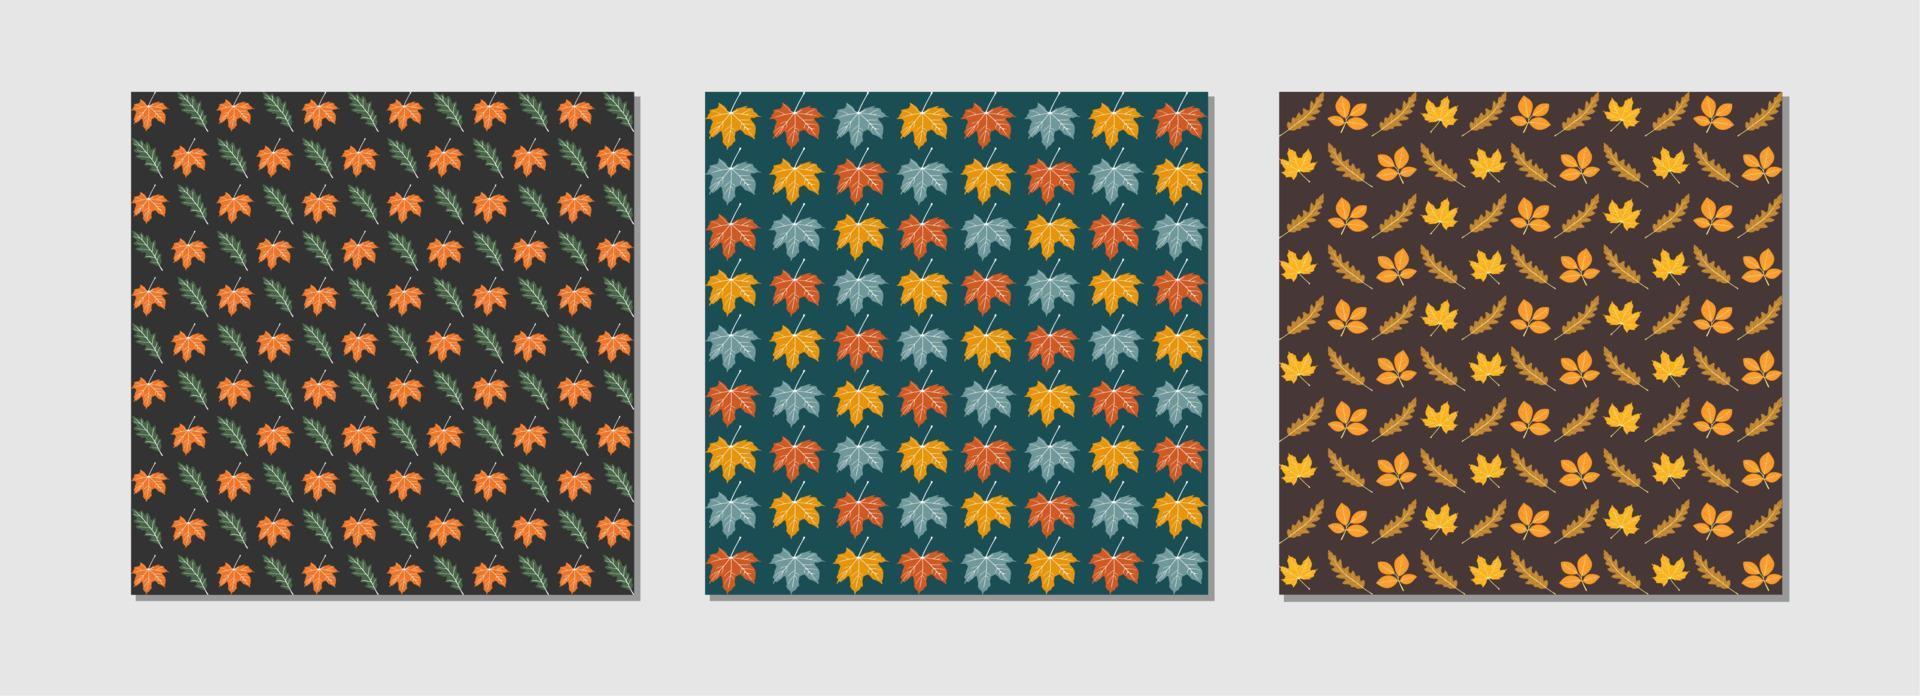 Reihe von Herbstlaub in einem nahtlosen Muster. Sammlung 3 Muster. Blumentapete der Saison. Herbst Blatt Natur Hintergrund. vektor